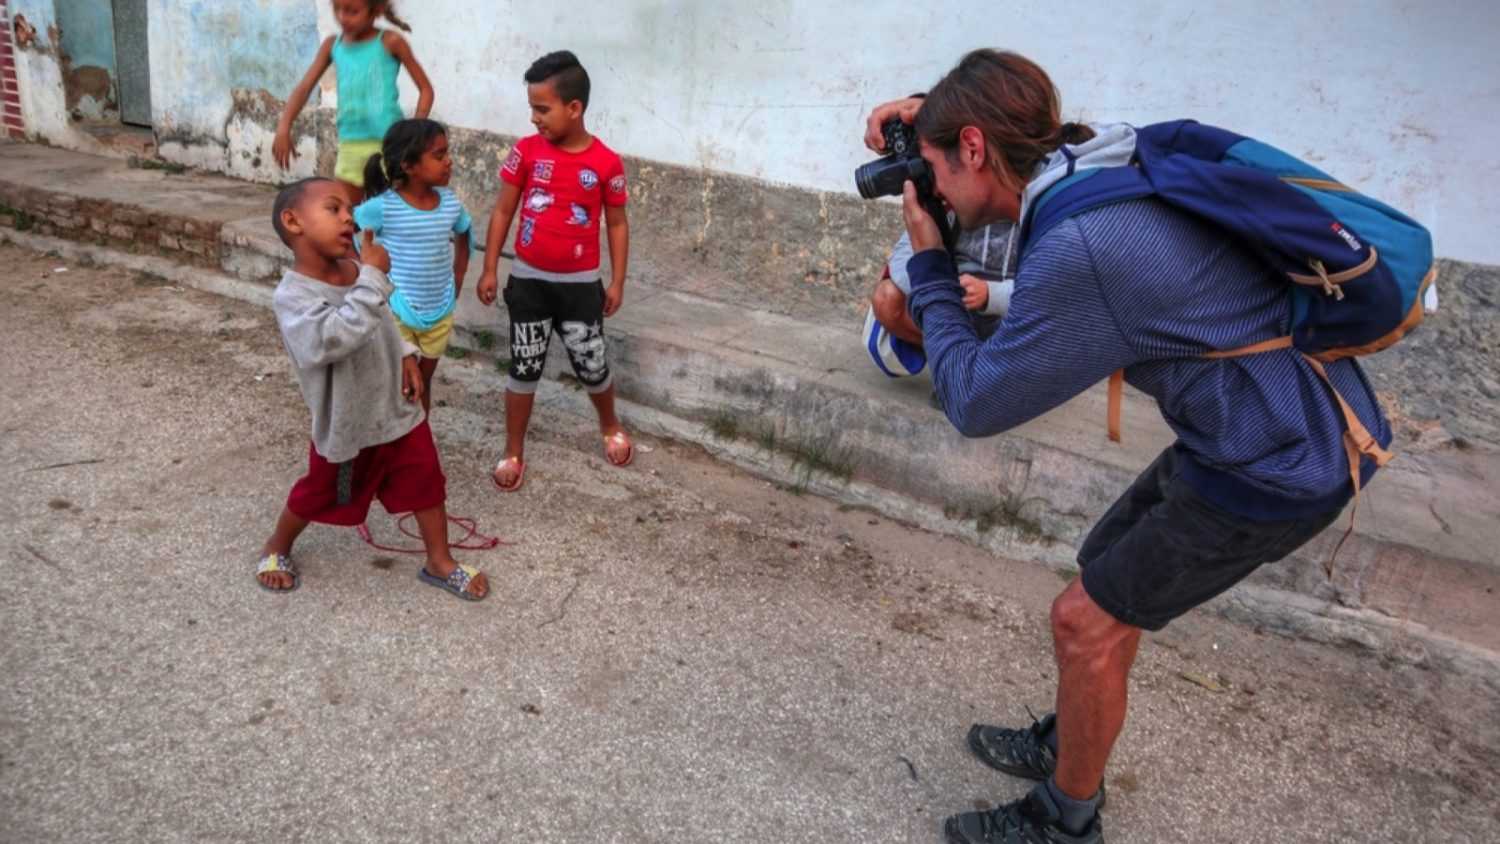 Traveler taking photo of poor kids